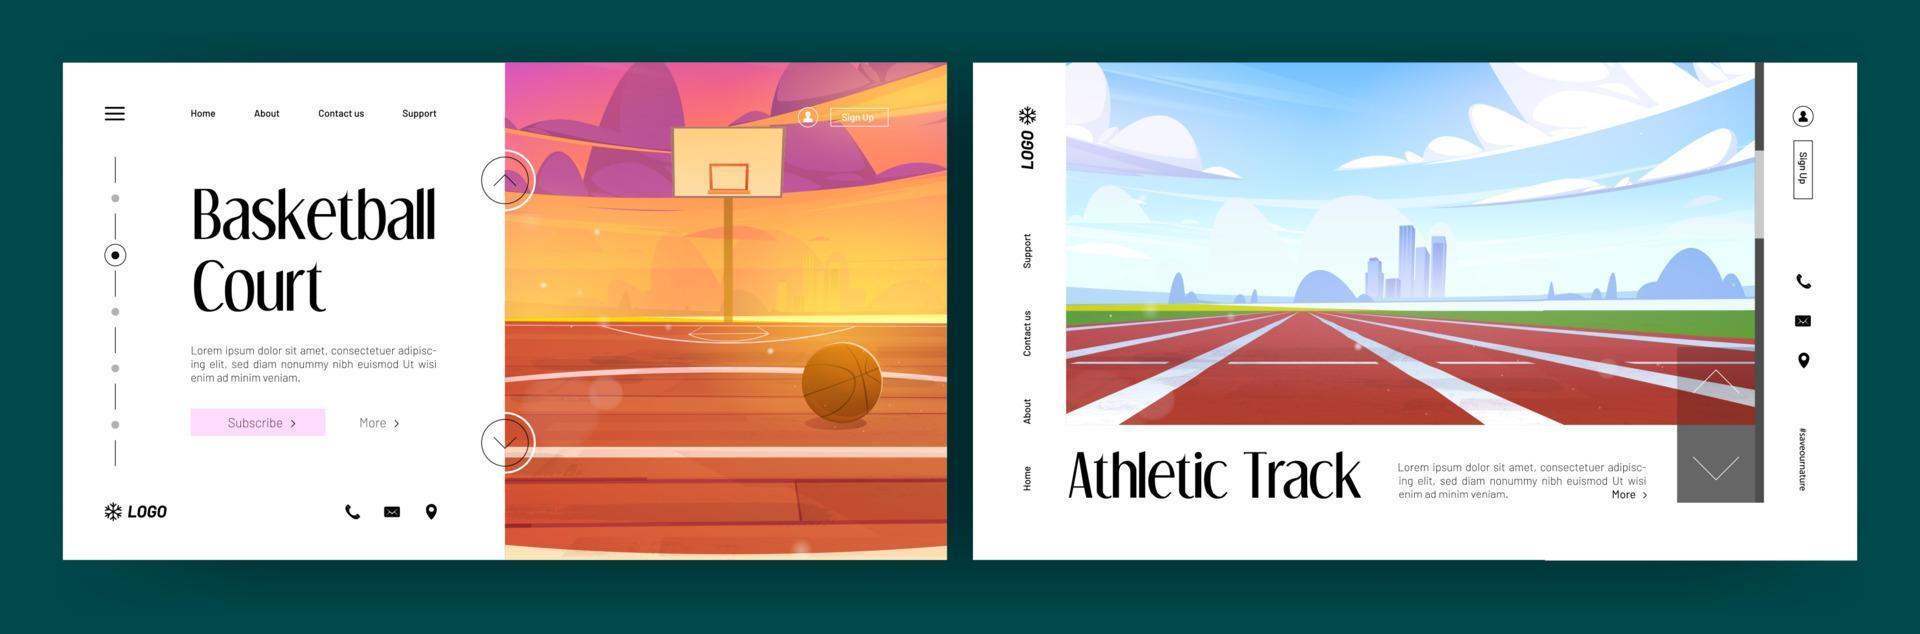 basketboll domstol och atletisk Spår banderoller vektor